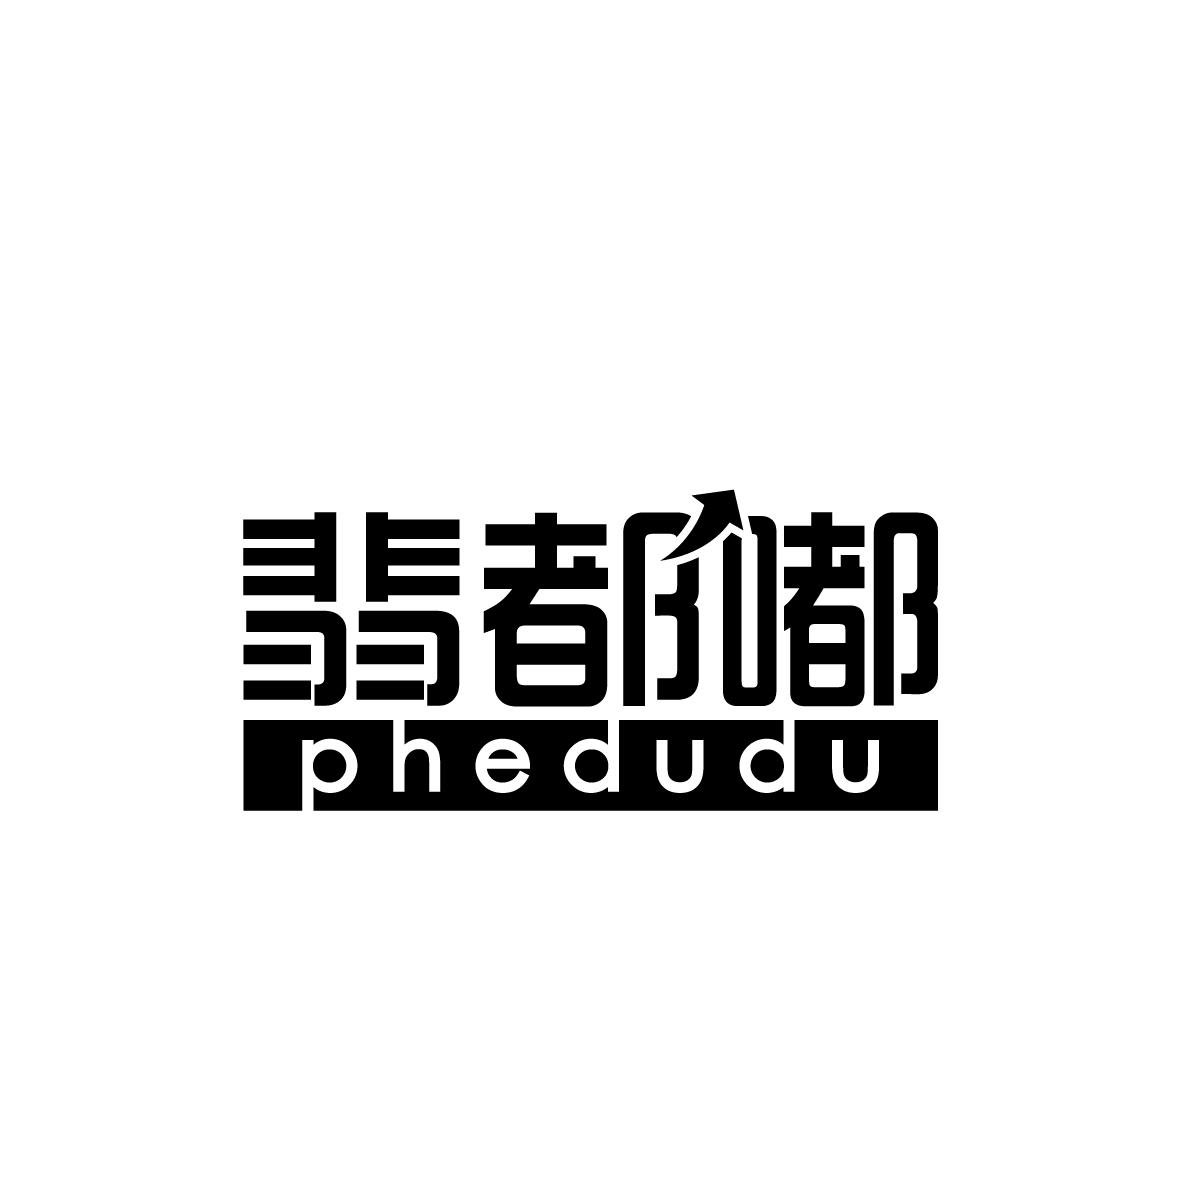 35类-广告销售翡都嘟 PHEDUDU商标转让